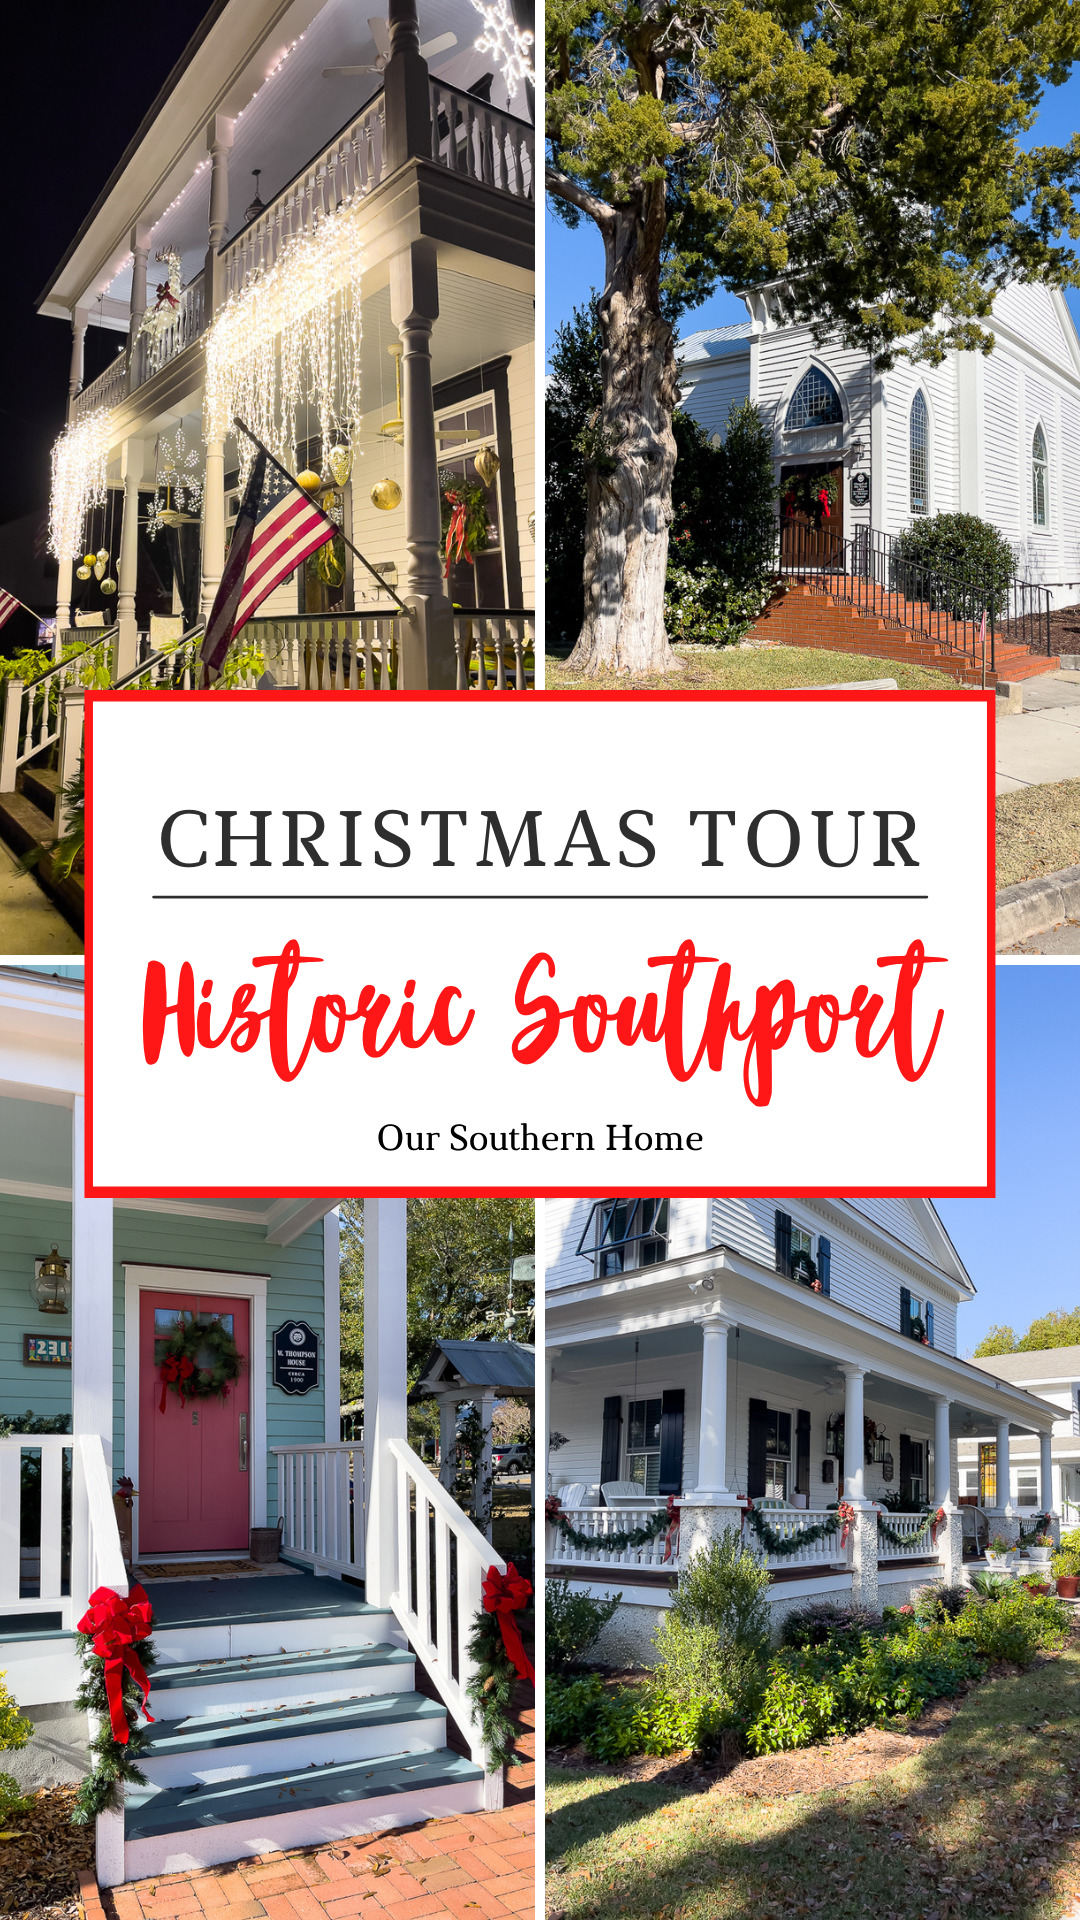 Historic Southport Homes at Christmas